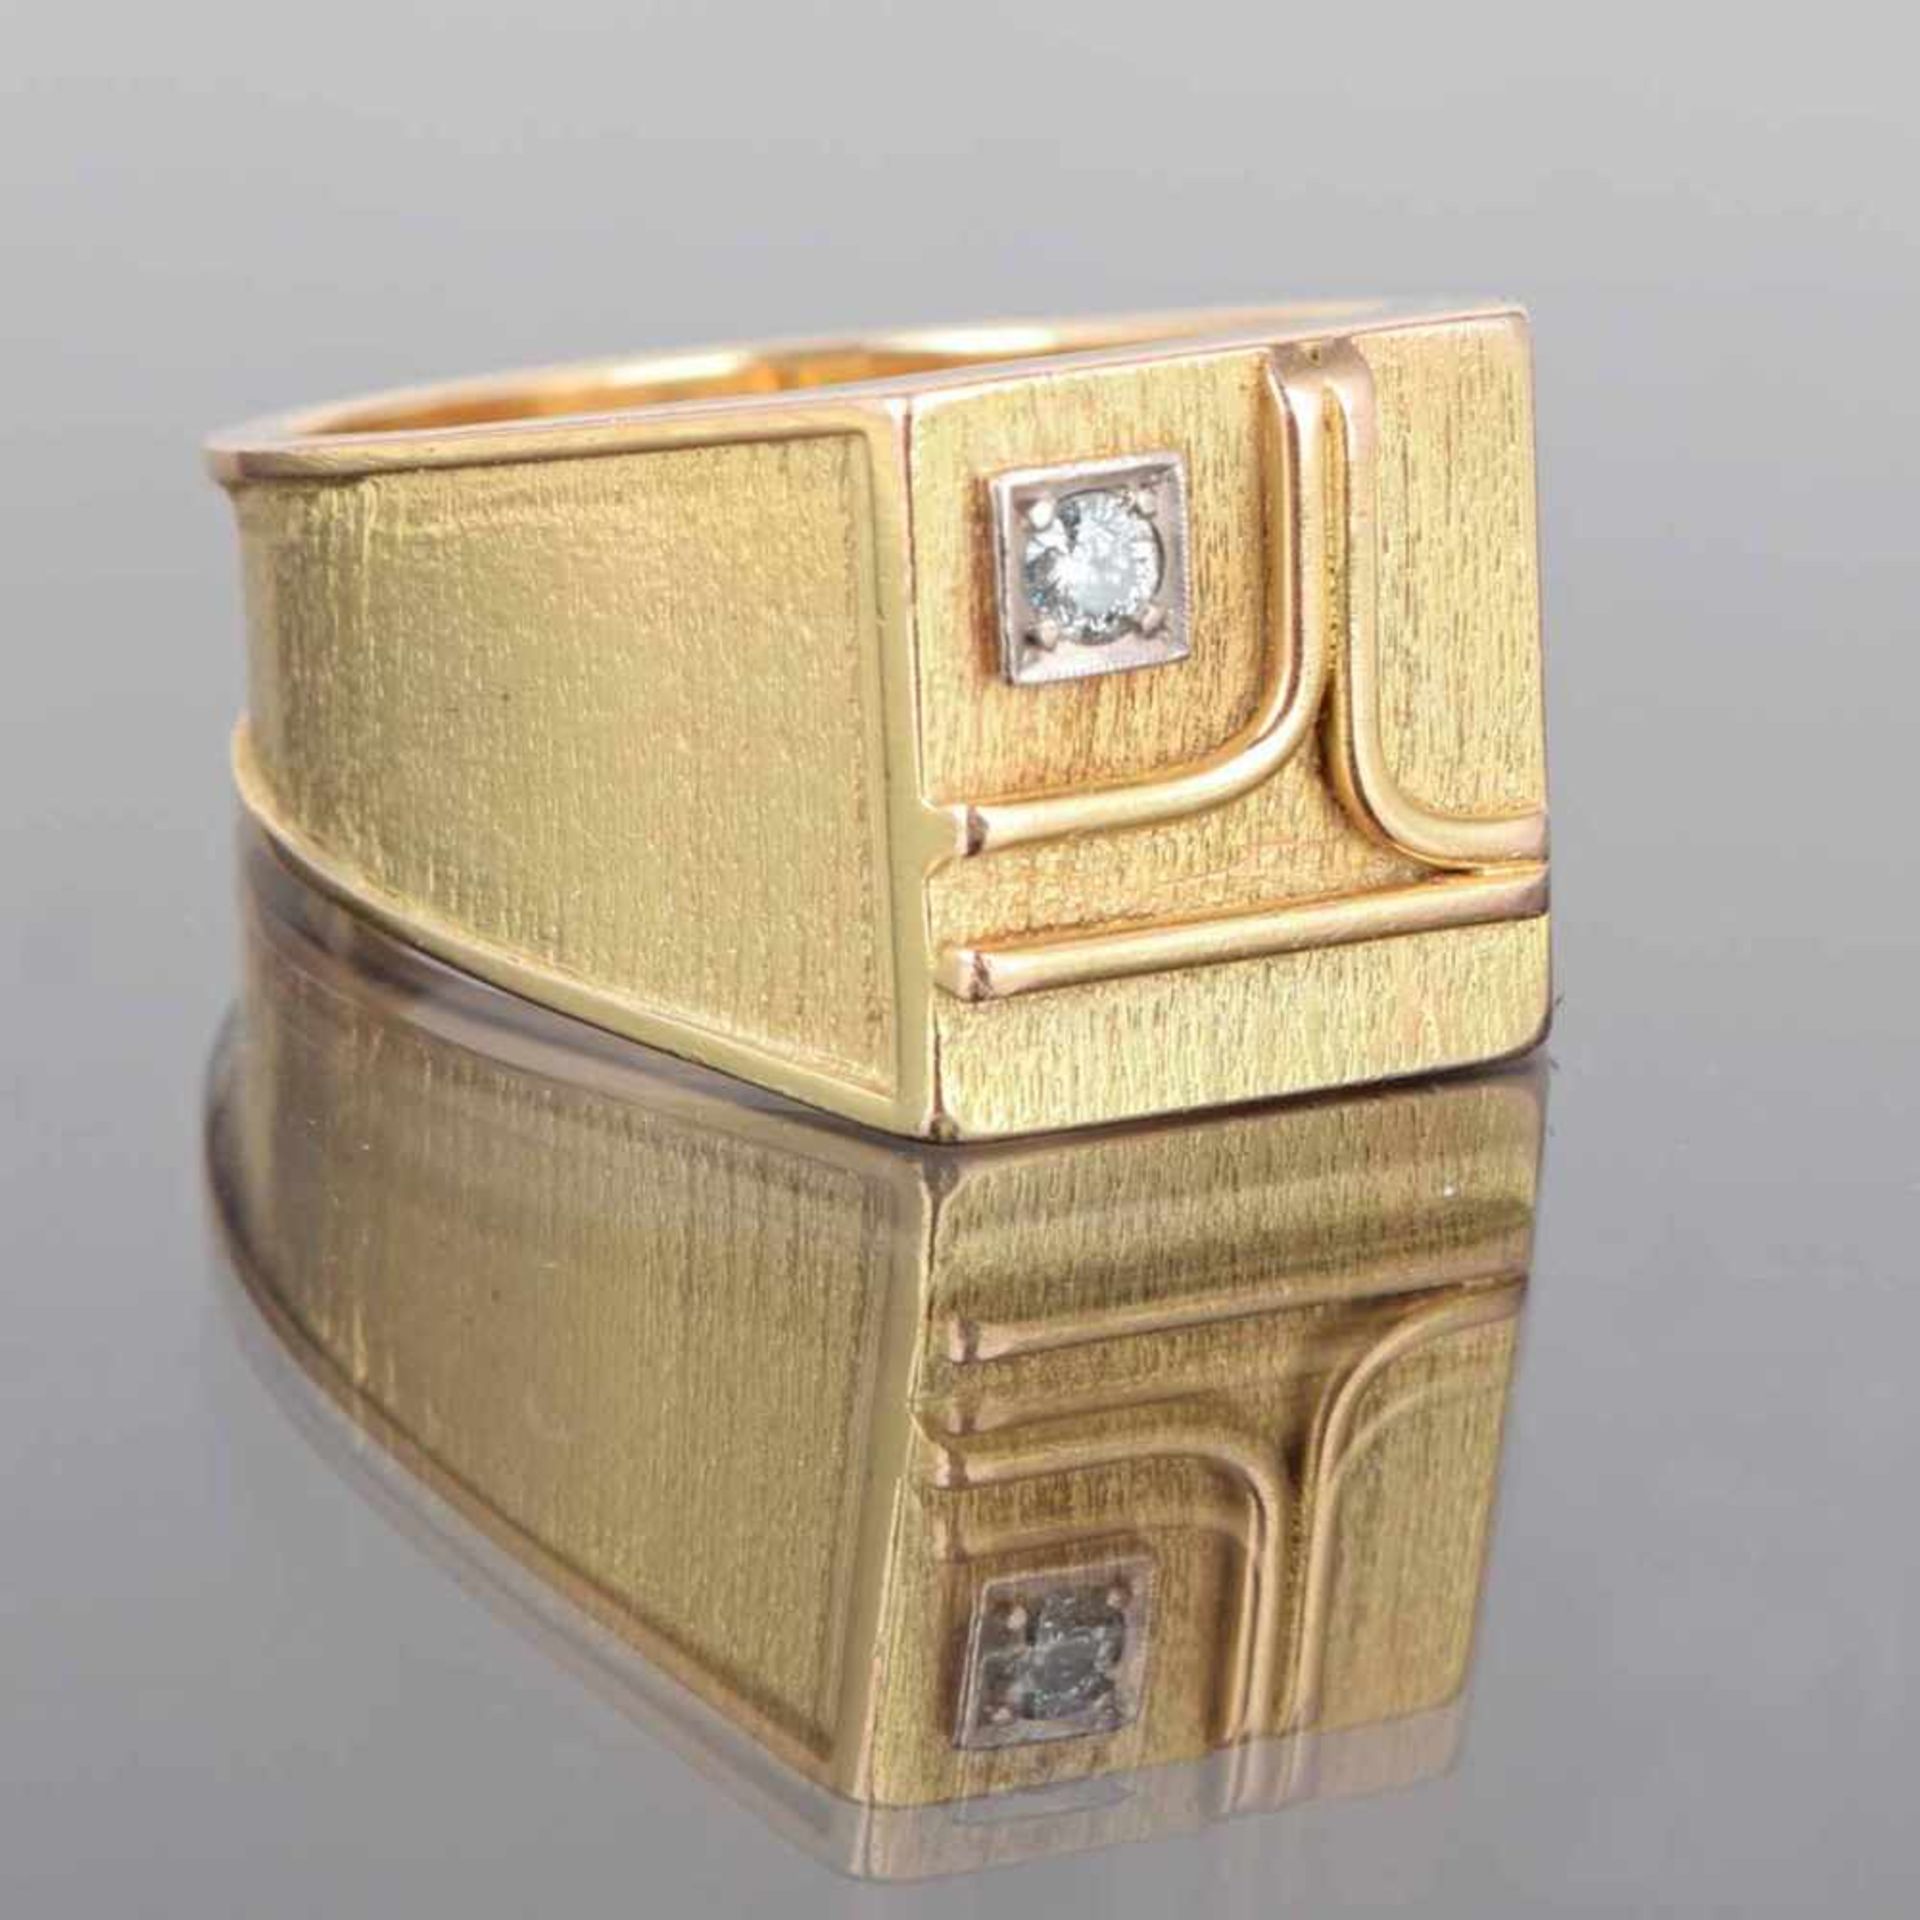 Herrenring GG 585 geprüft, im flachen vierseitigen Ringkopf mit aufgebrachten Goldstäben außermittig - Bild 2 aus 3